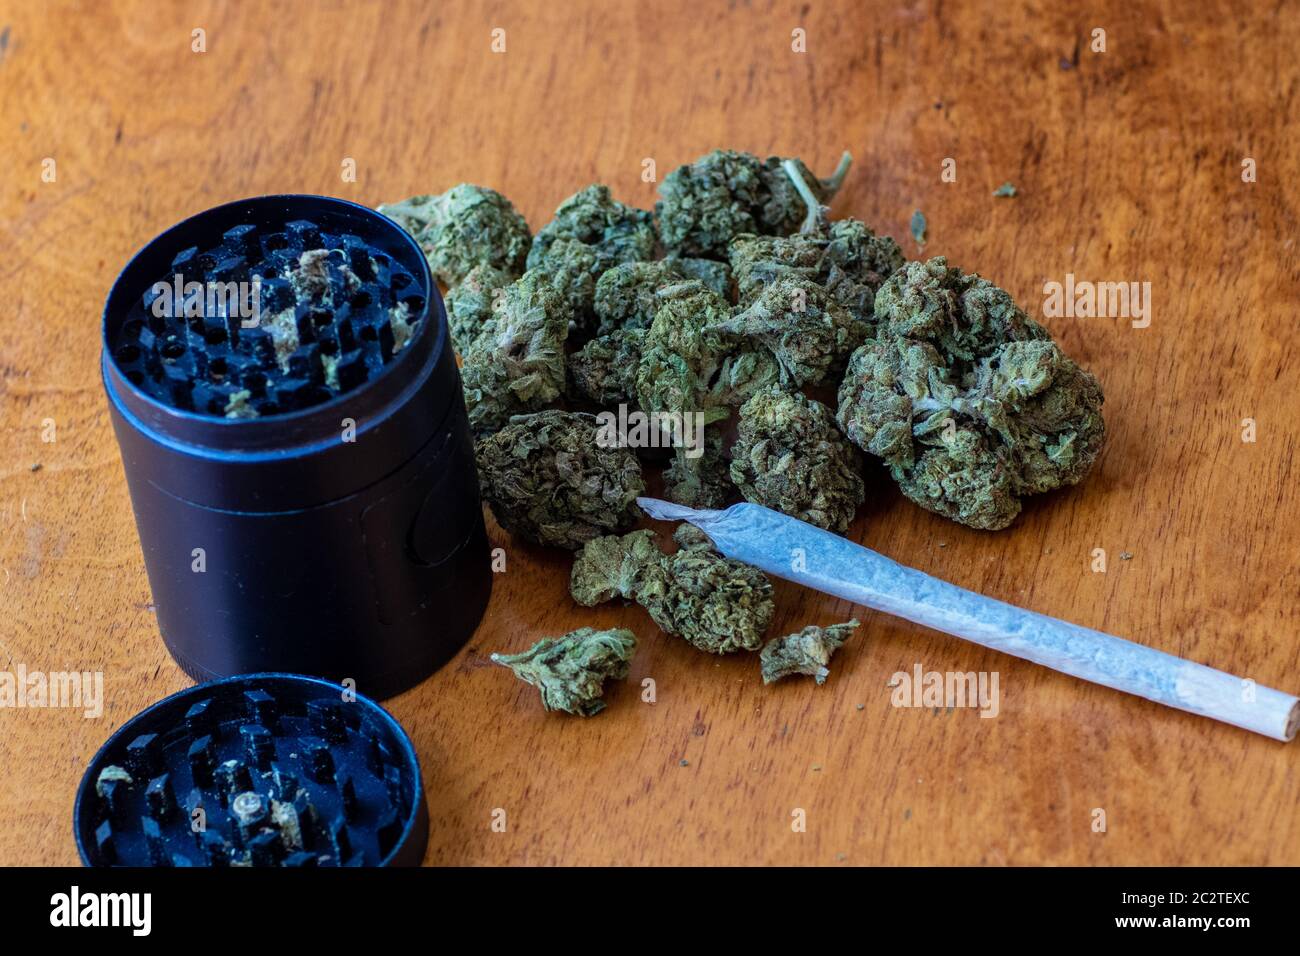 marihuana brote flor de cannabis cierre con molinillo y articulación de cannabis Foto de stock